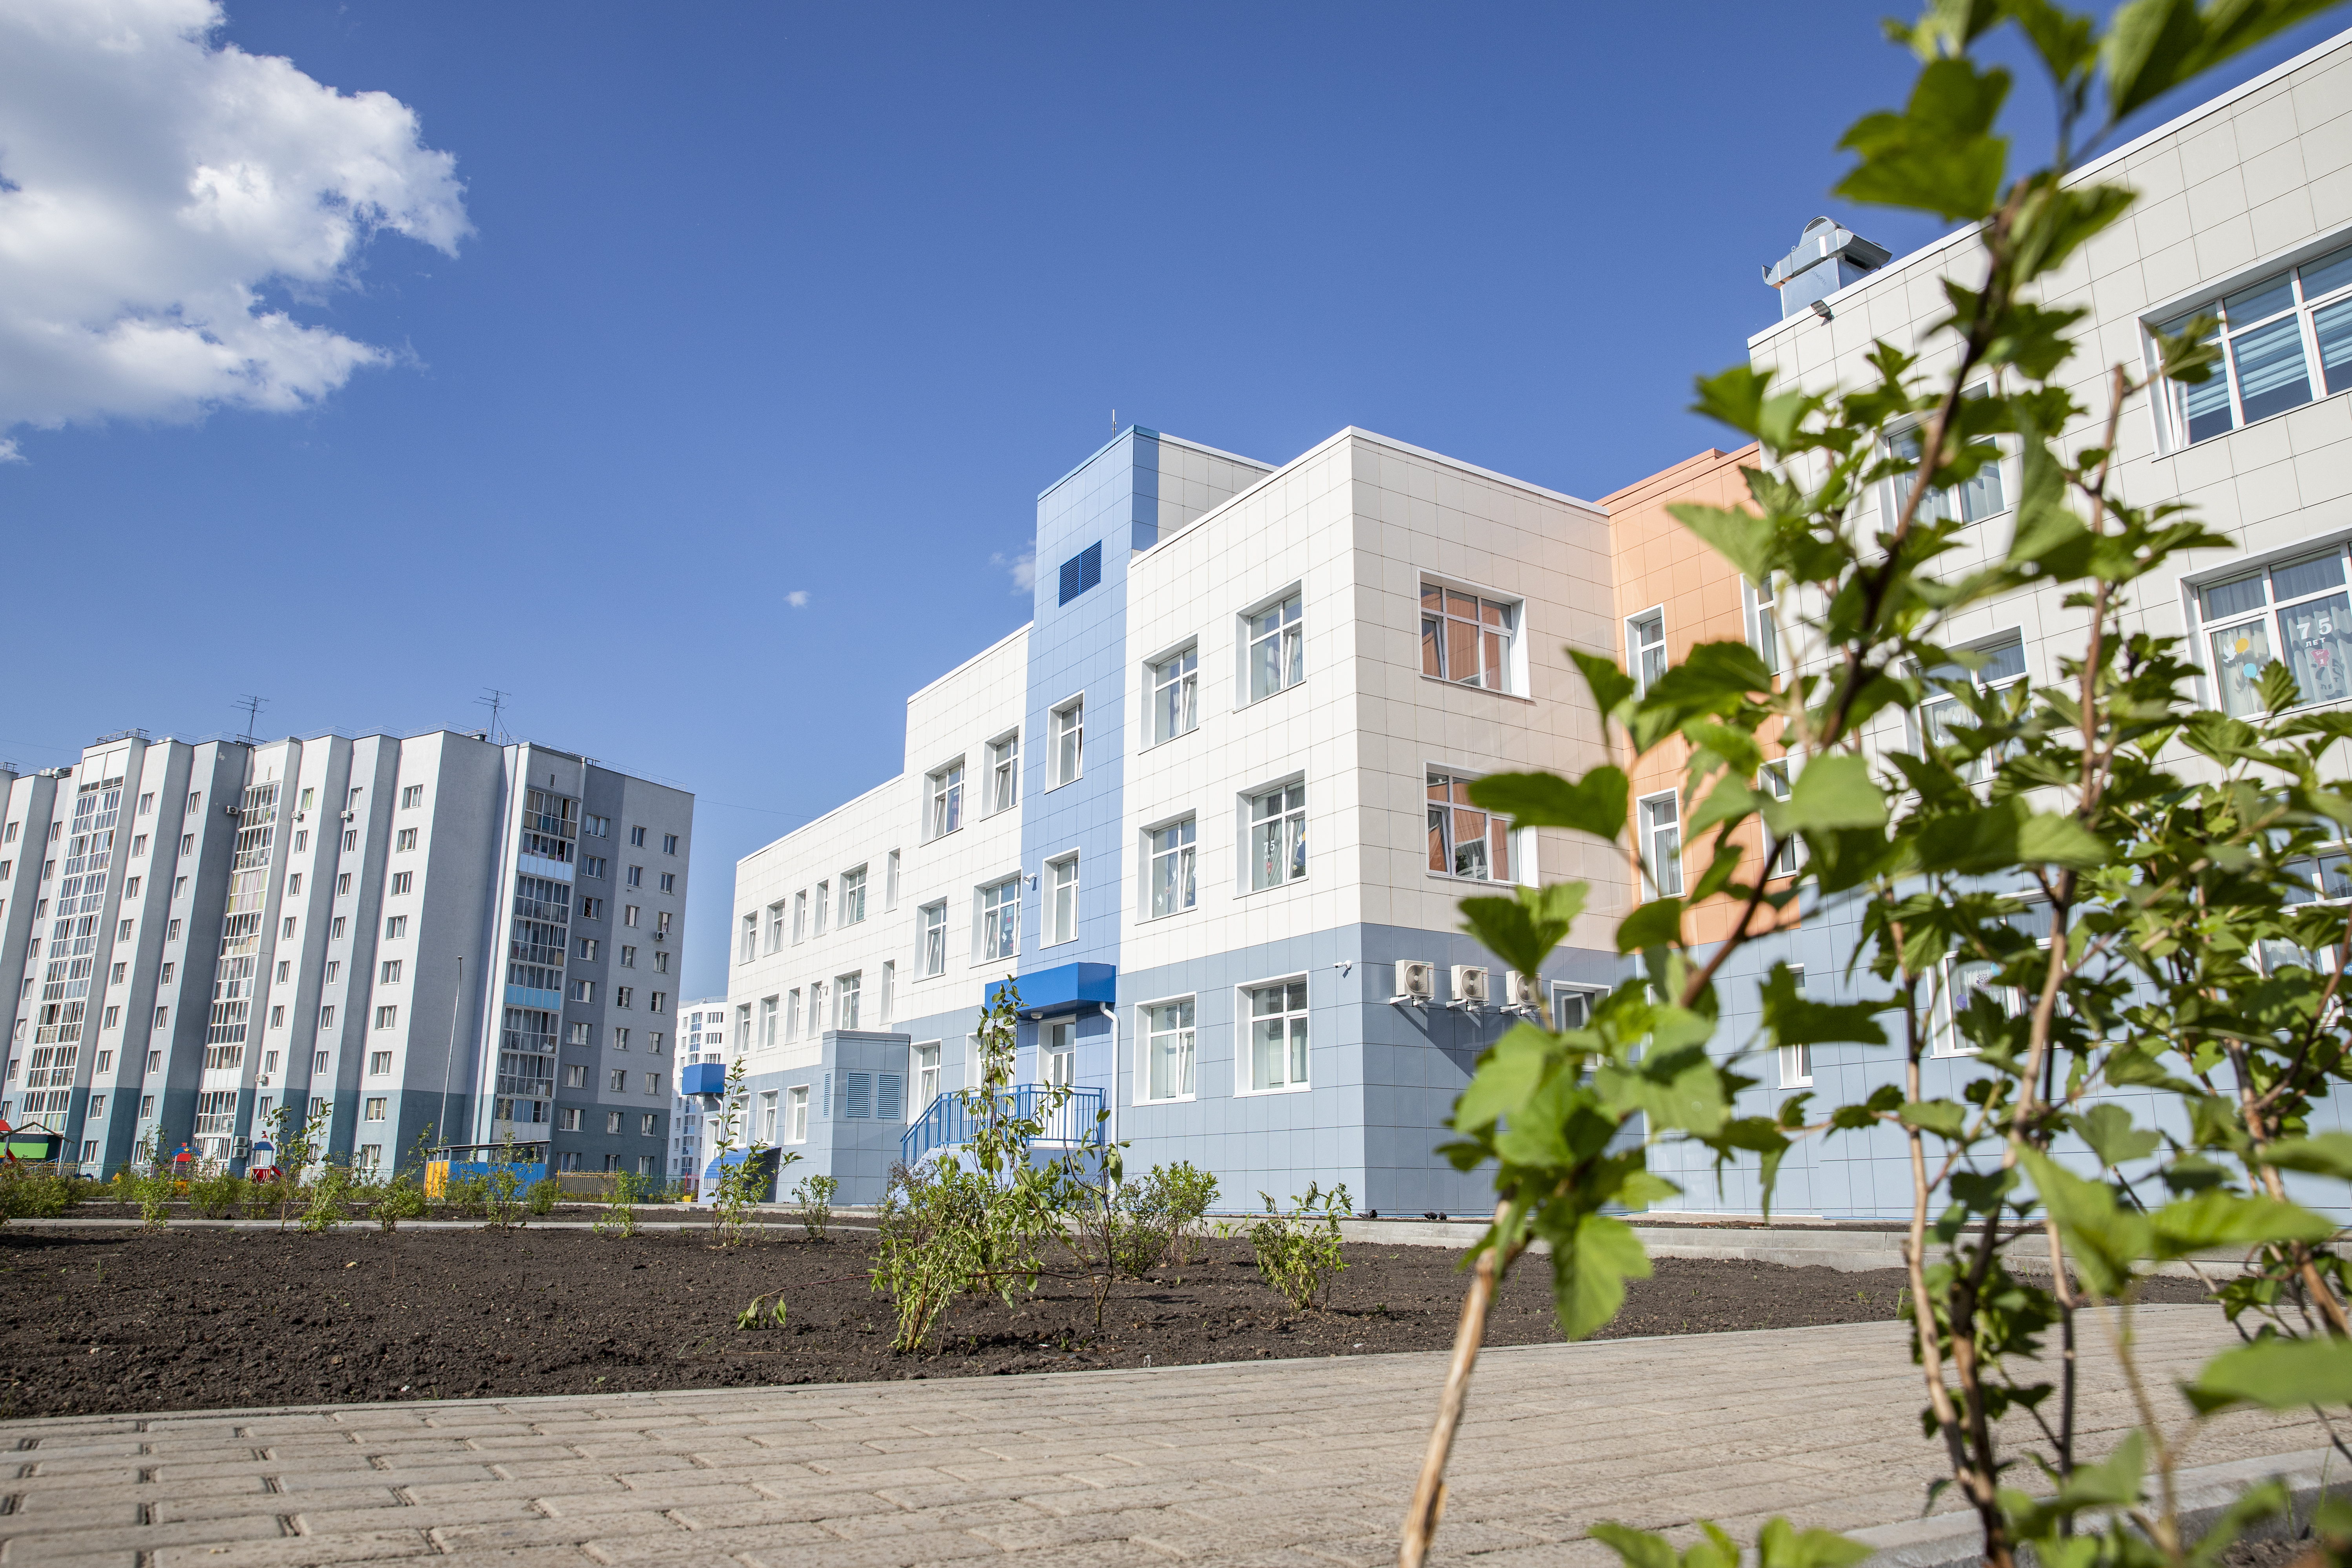 Детский сад на 350 мест построен в новом жилом районе Кемерова